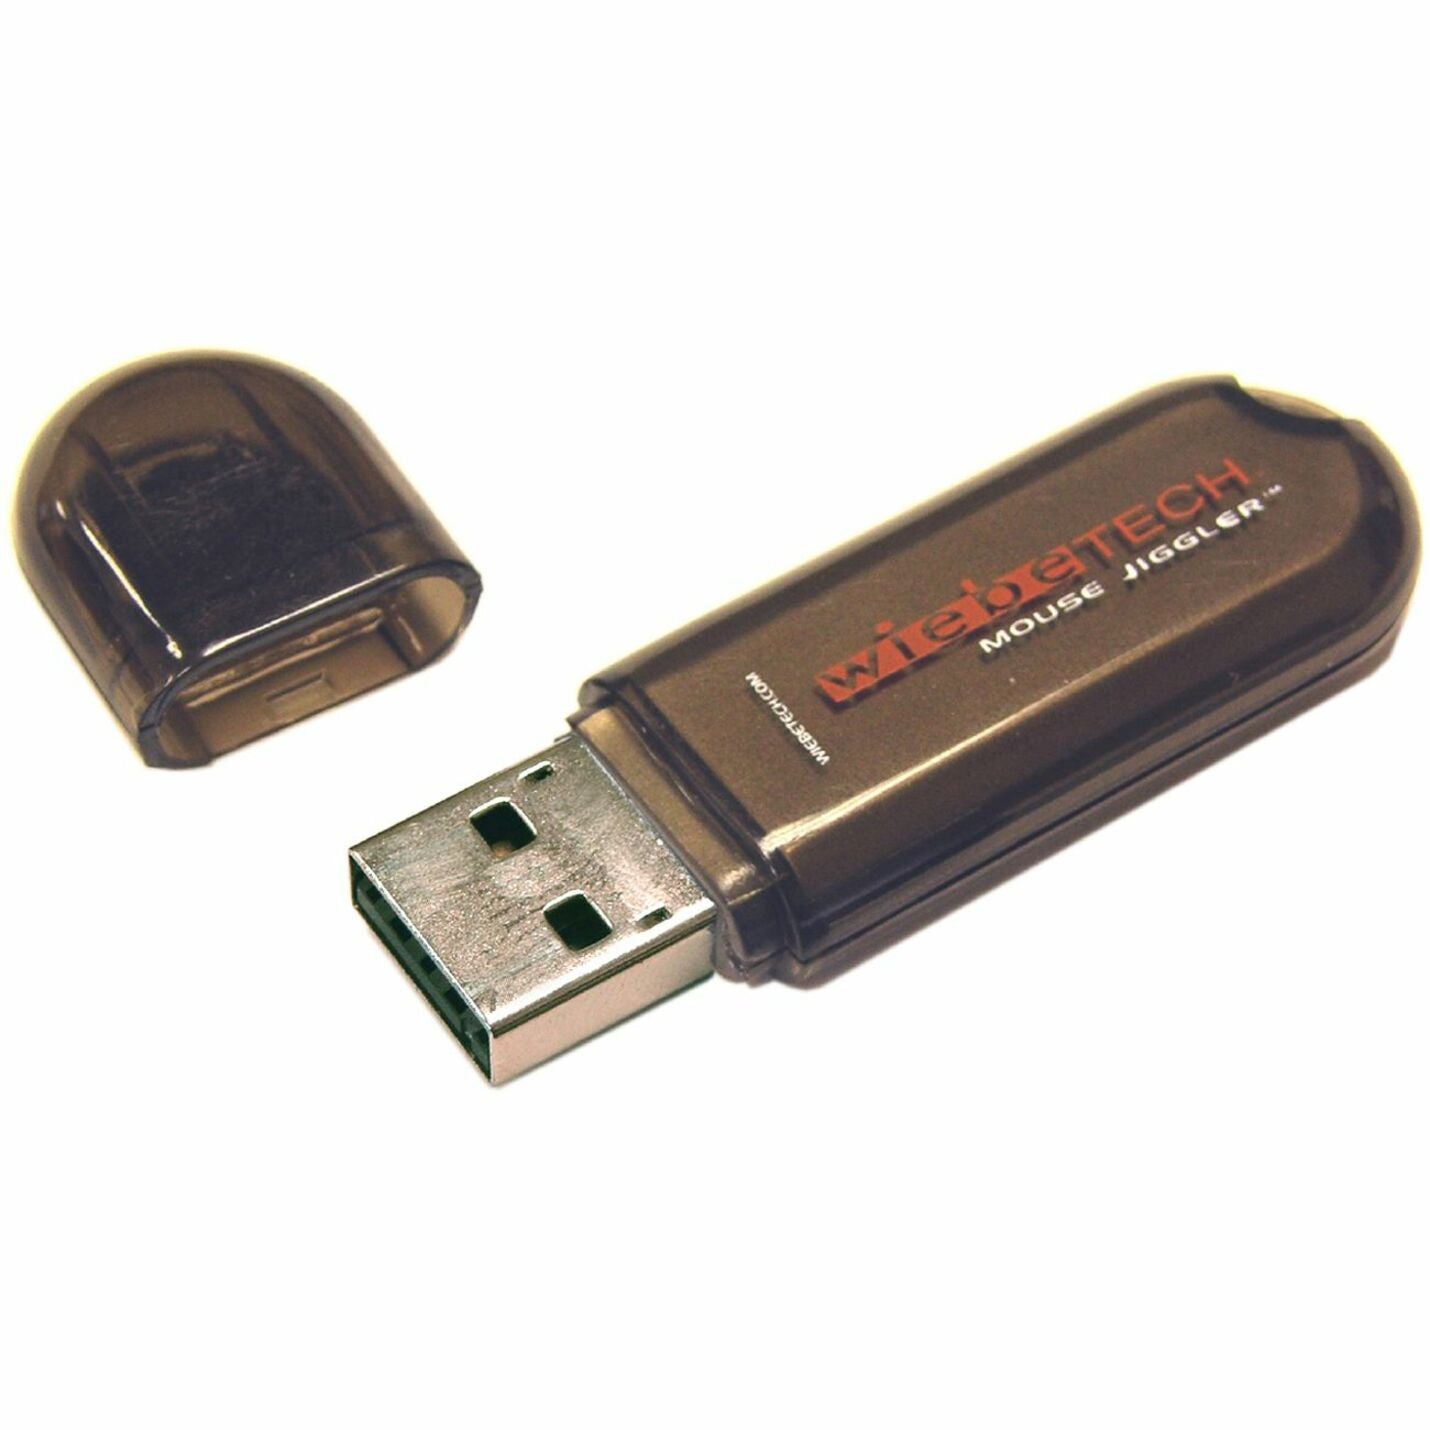 WiebeTech 30200-0100-0021 MJ-1 Mouse Jiggler, Prevent Screen Lock, USB Powered